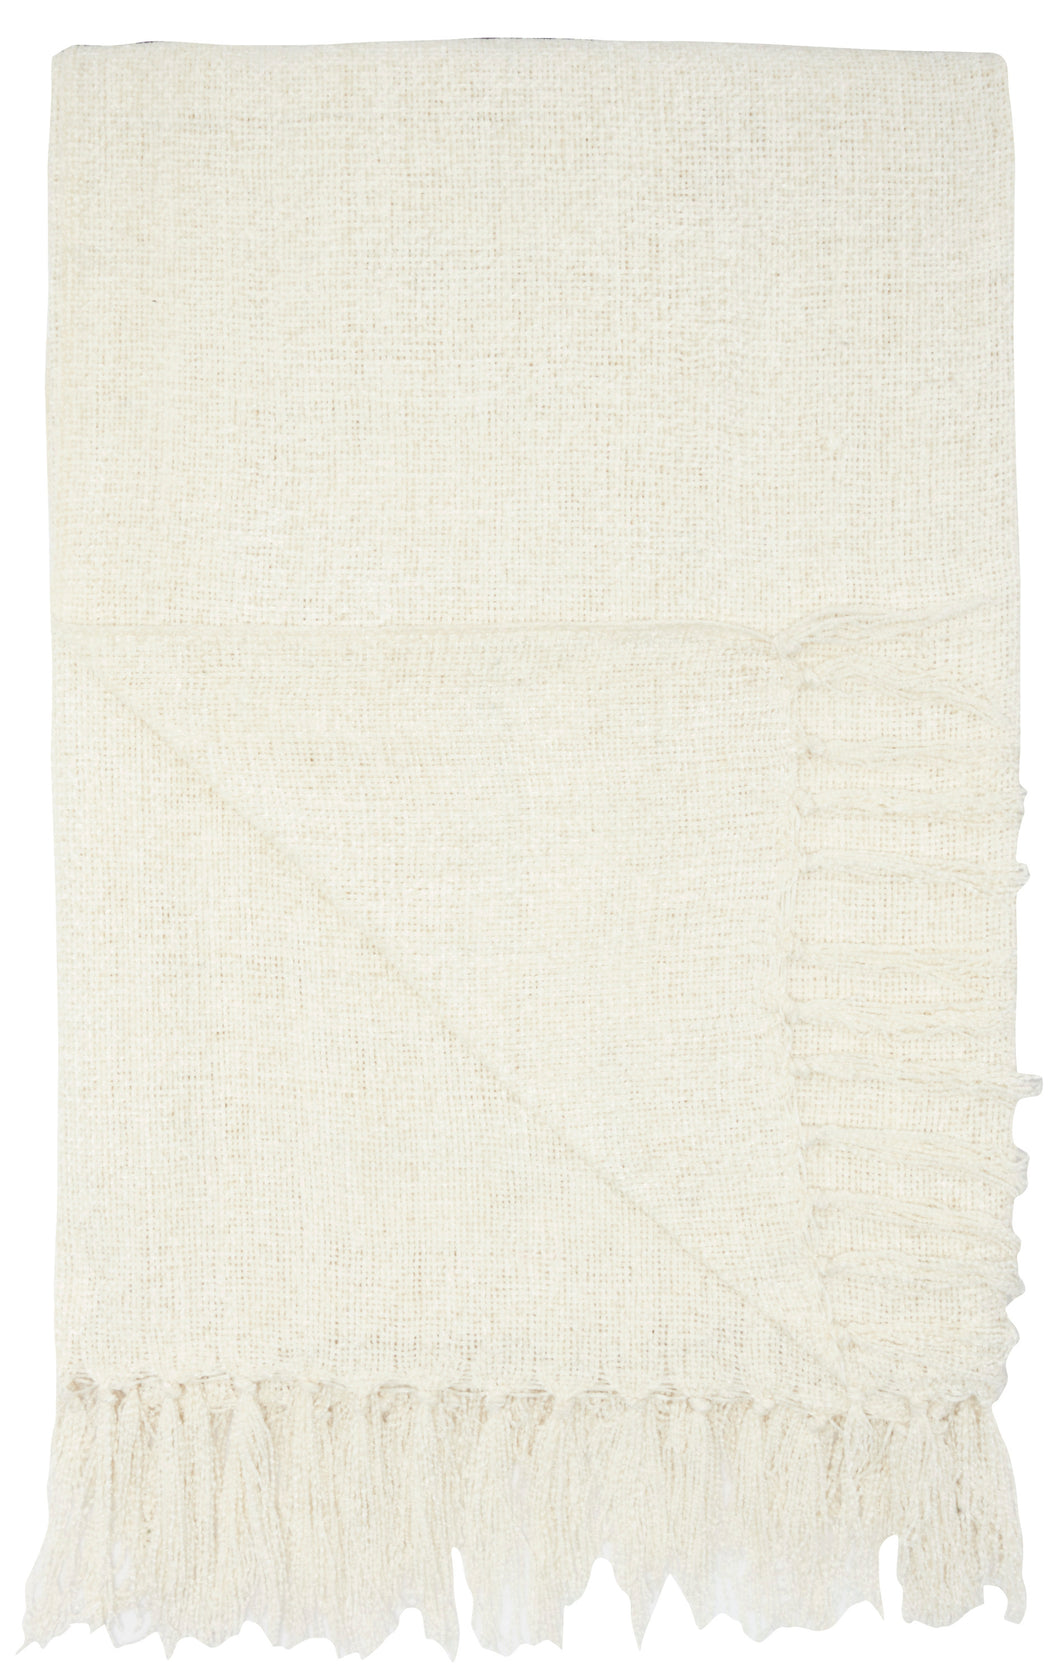 Mina Victory Indoor/Outdoor Woven Ivory Throw Blanket IH018 50